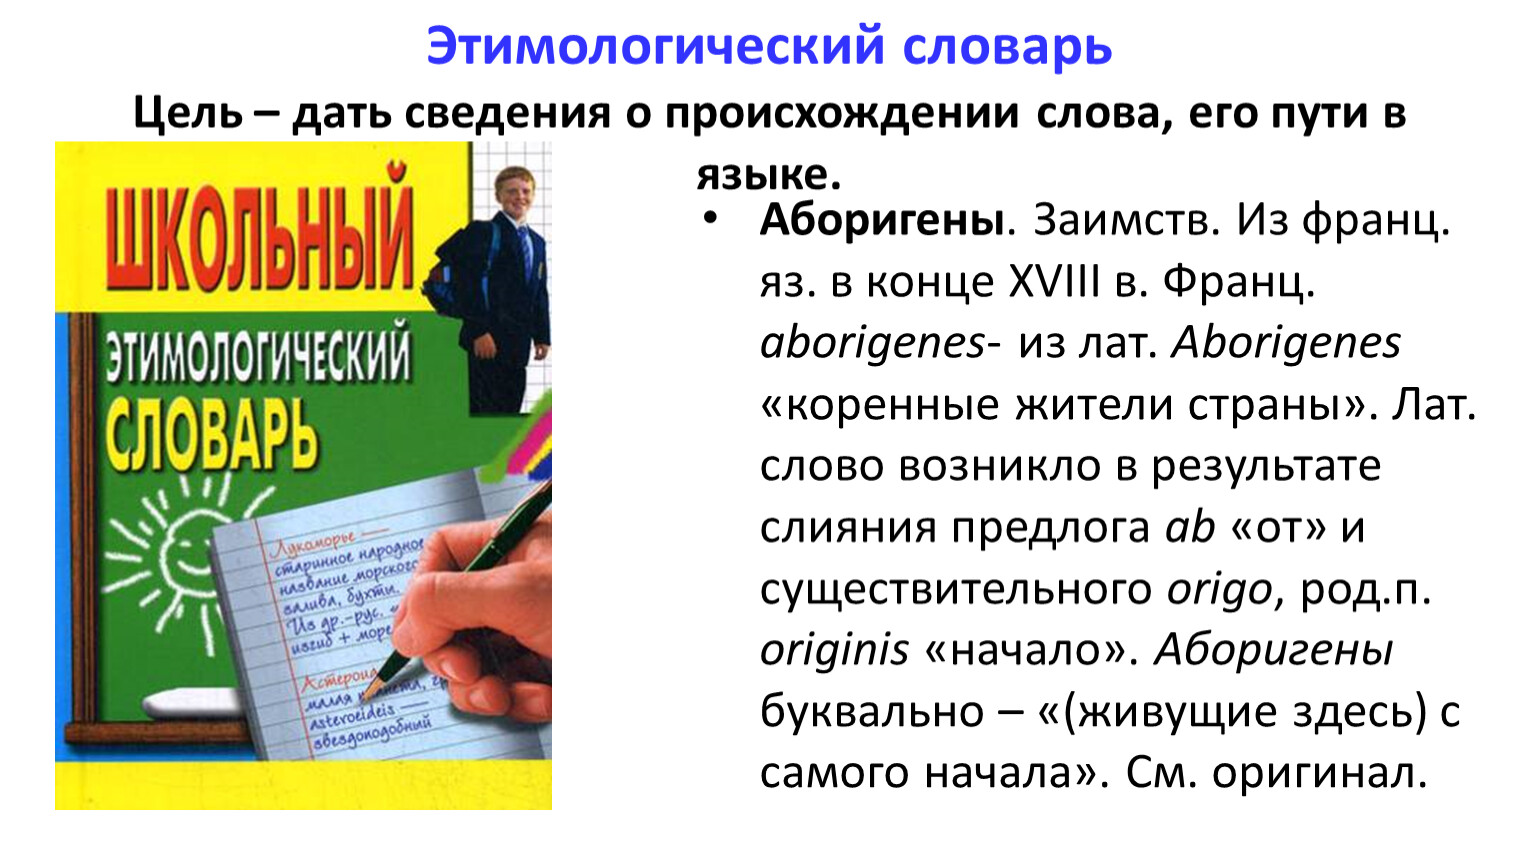 В россии составили словарь ковидных антипословиц « бнк